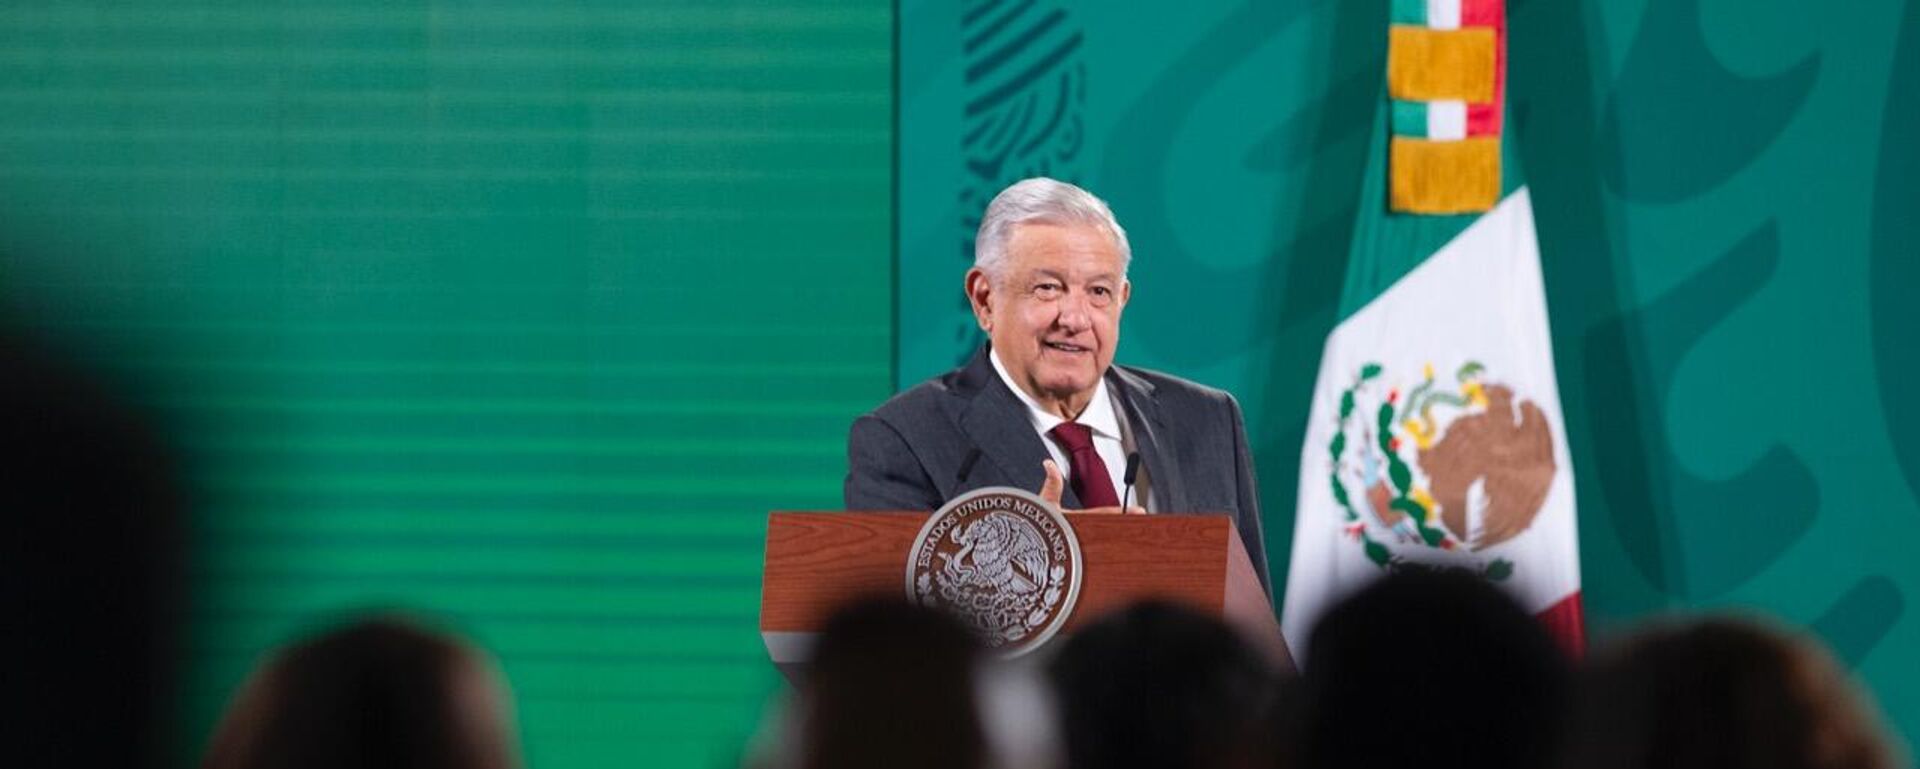 Andrés Manuel López Obrador, presidente de México - Sputnik Mundo, 1920, 07.10.2021